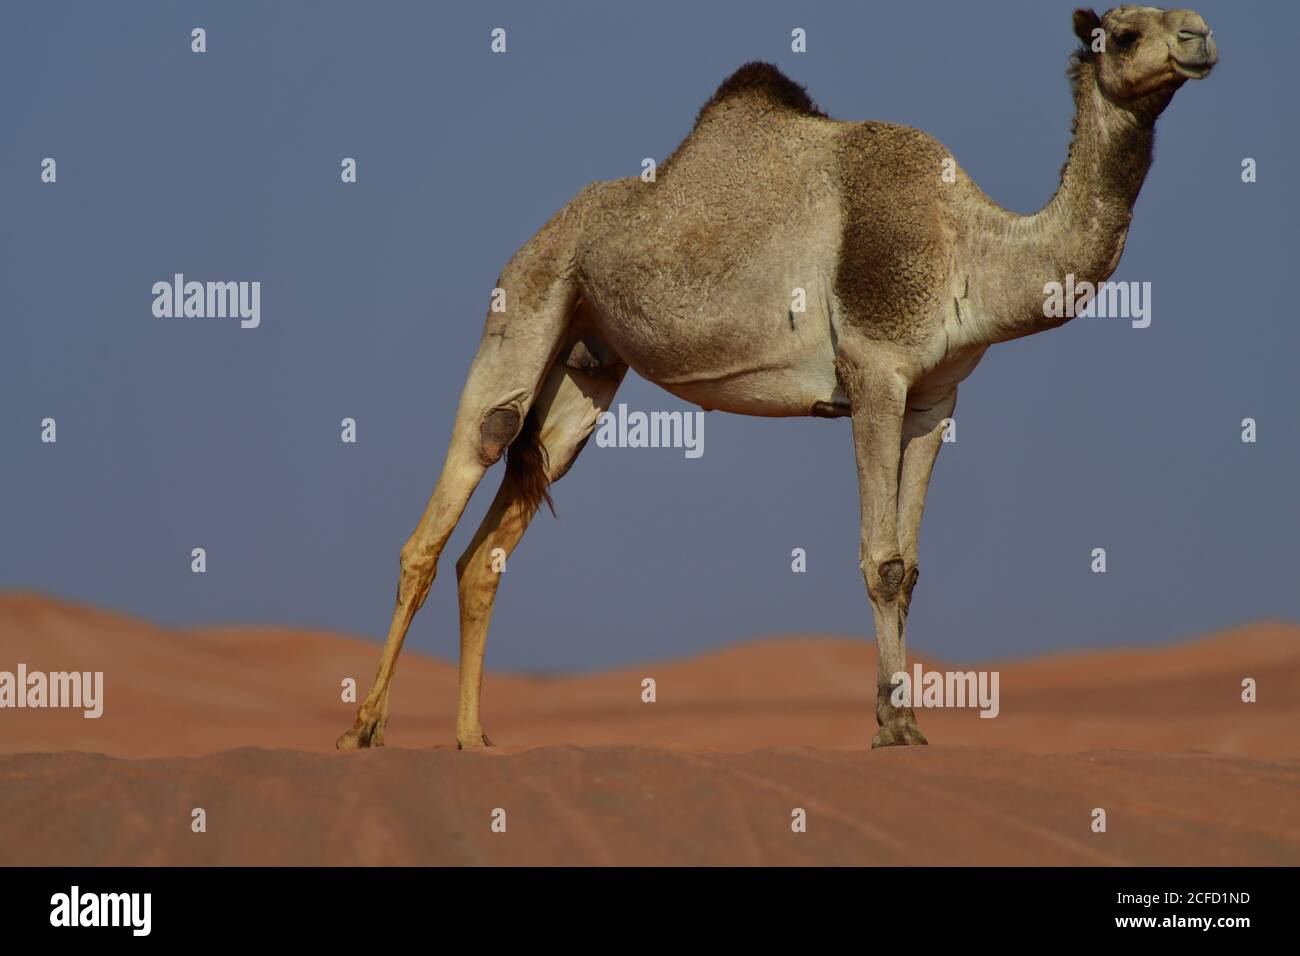 Arabisches Kamel (Dromedar) zeigt die schiere Größe und Fähigkeiten des Überlebens in den rauen Wüstenlandschaften der arabischen Halbinsel Landschaft. Stockfoto